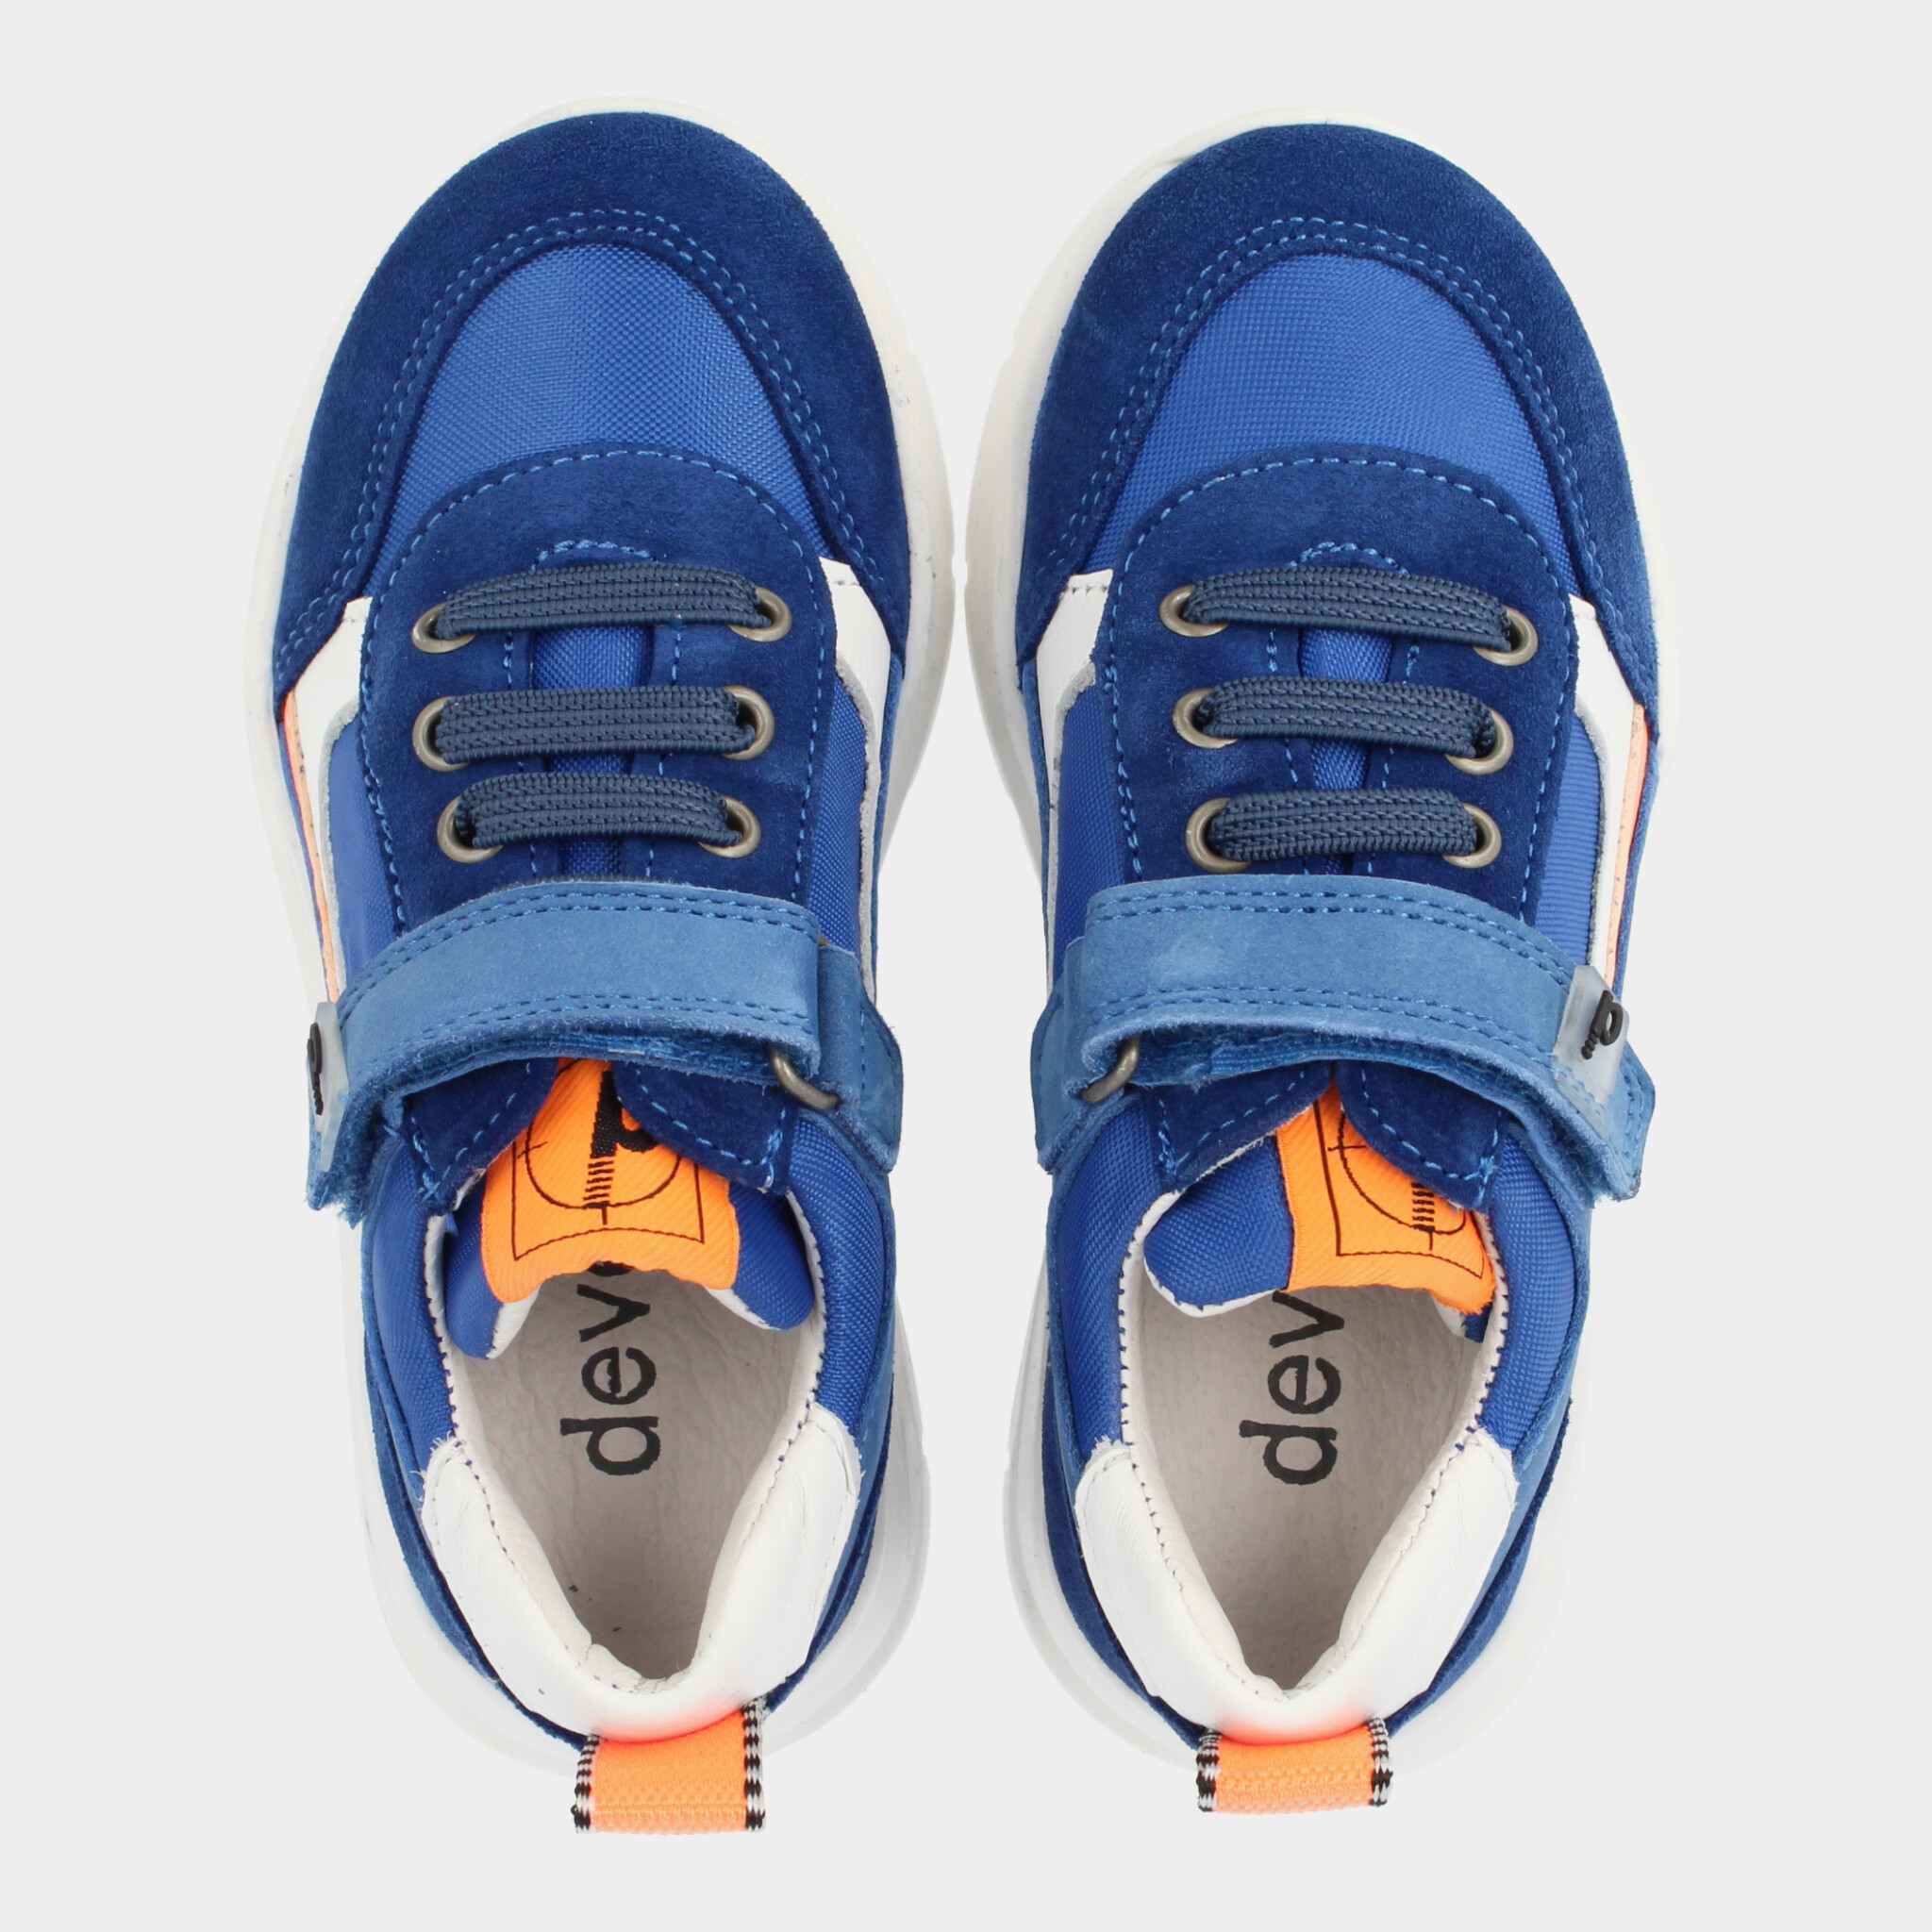 Blauwe Sneakers | Develab 45803